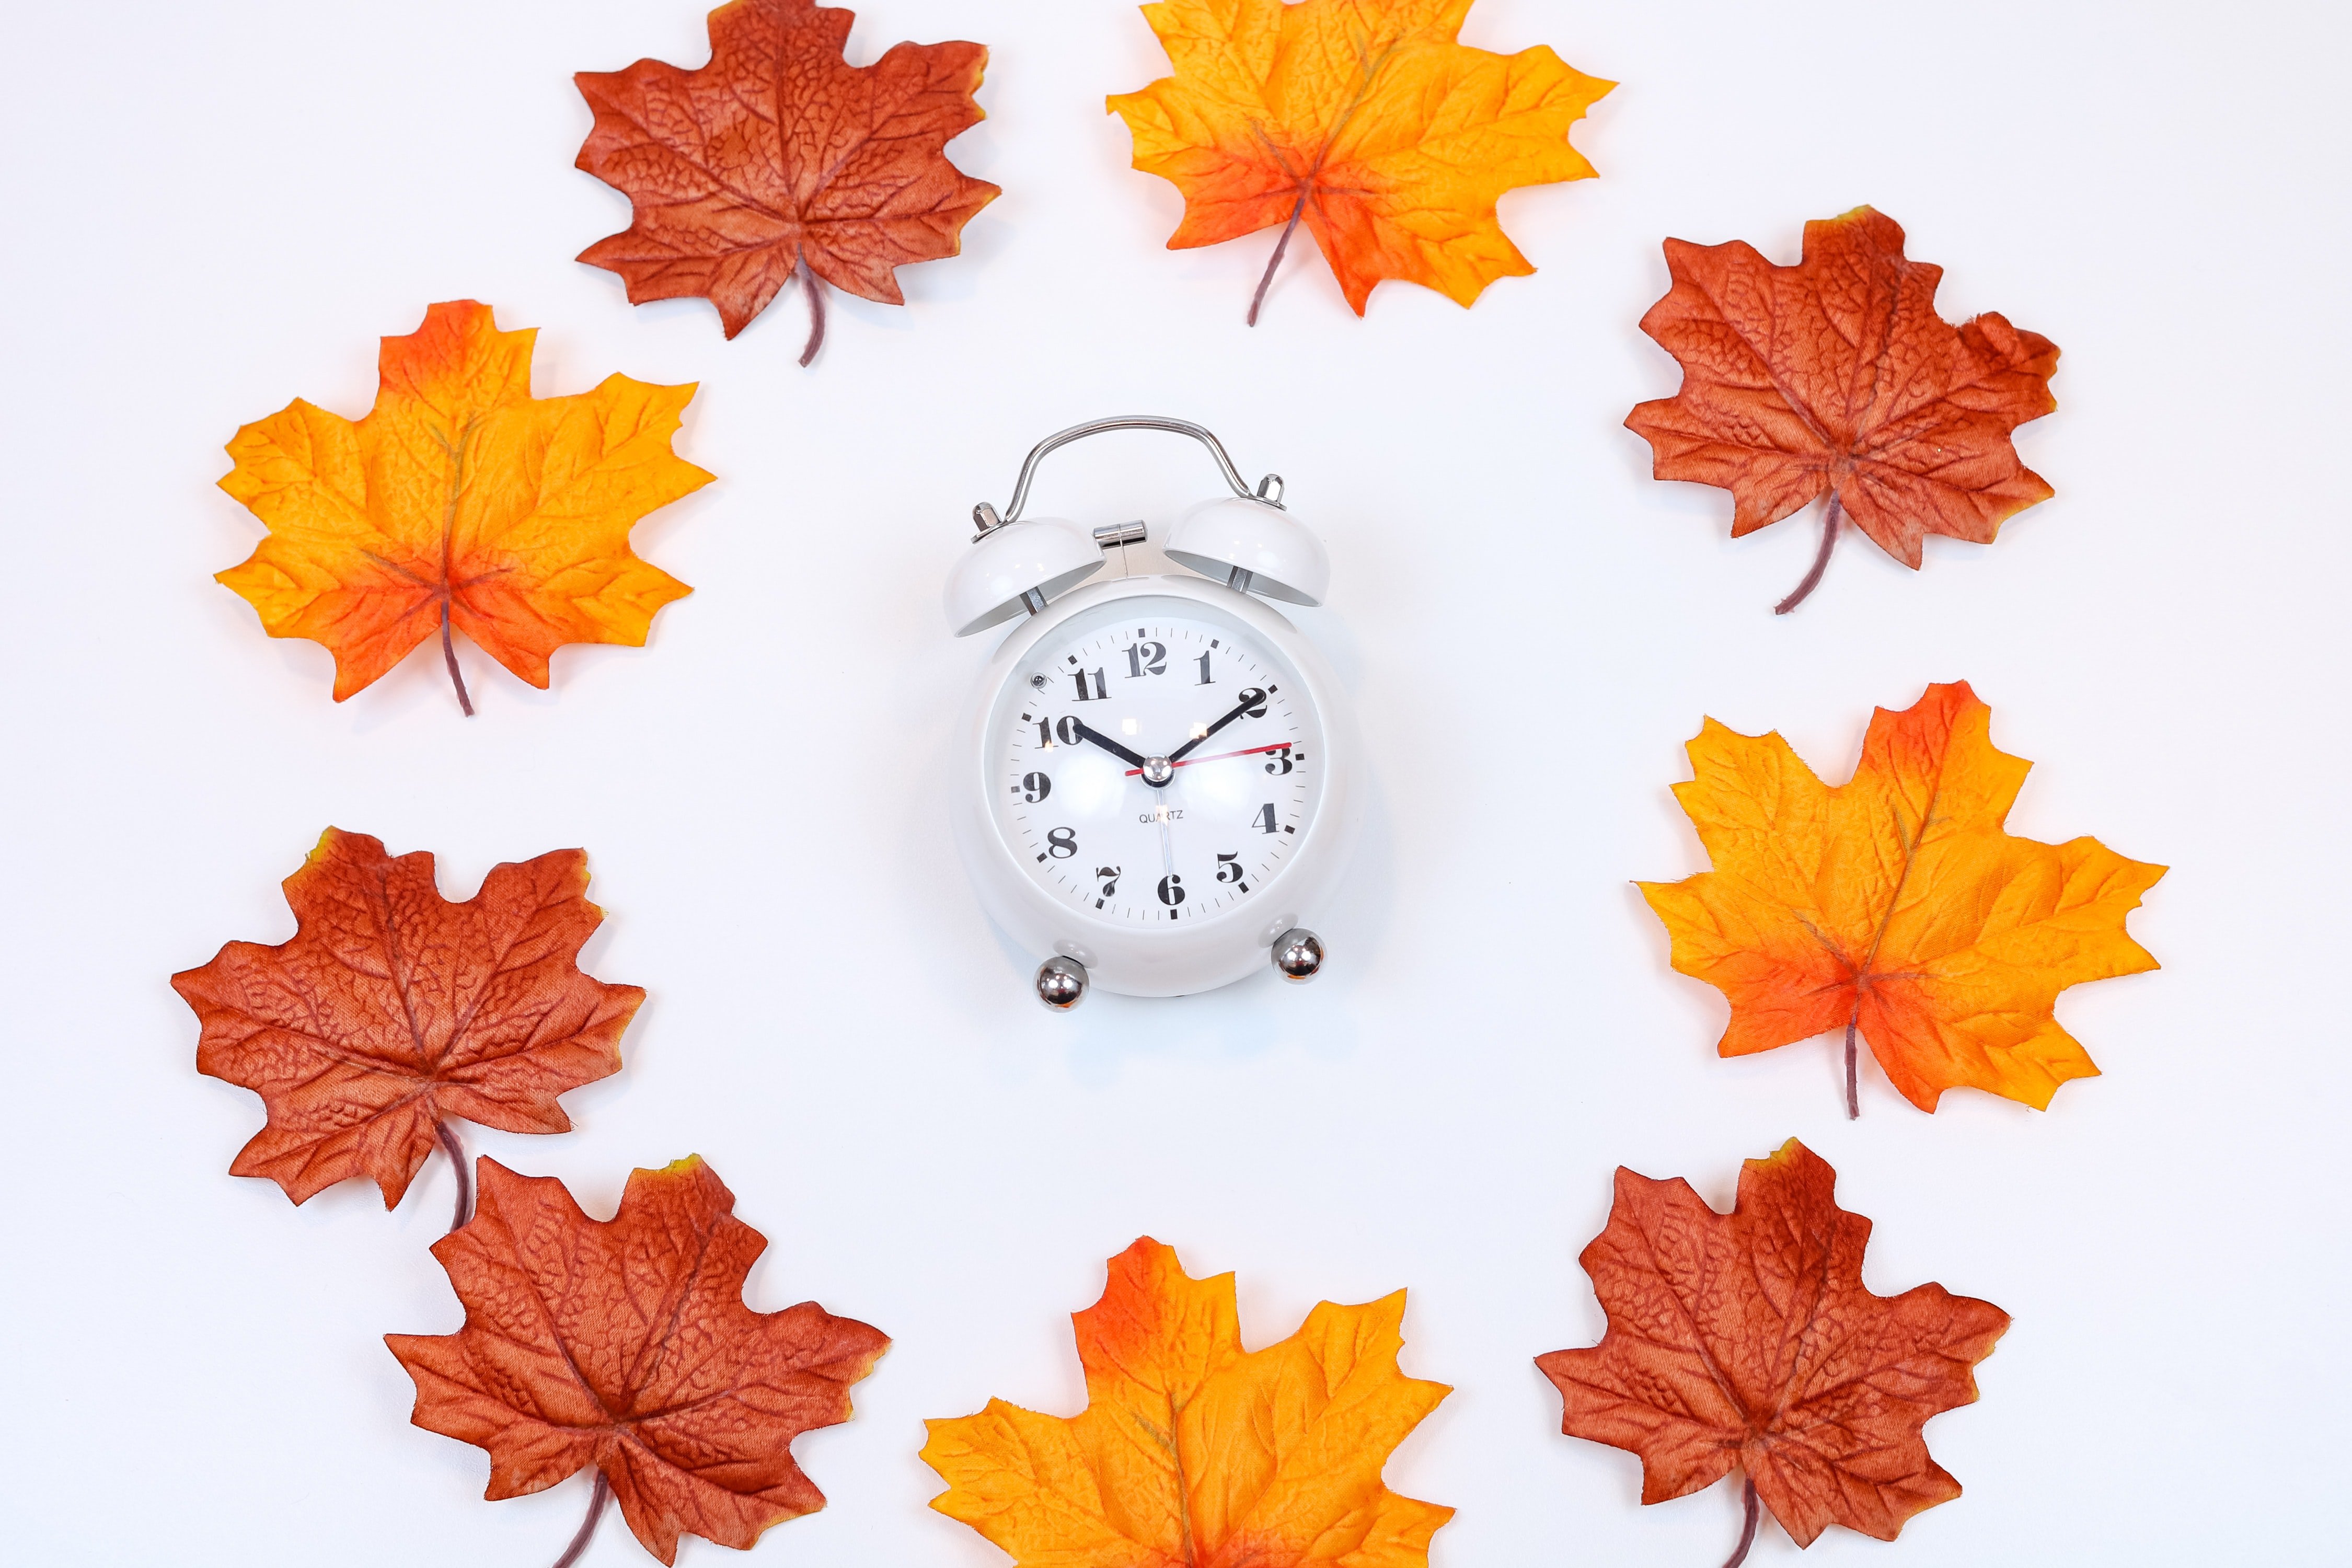 Cambio de hora otoño 2021 | ¿Cuándo se cambia la hora en octubre?